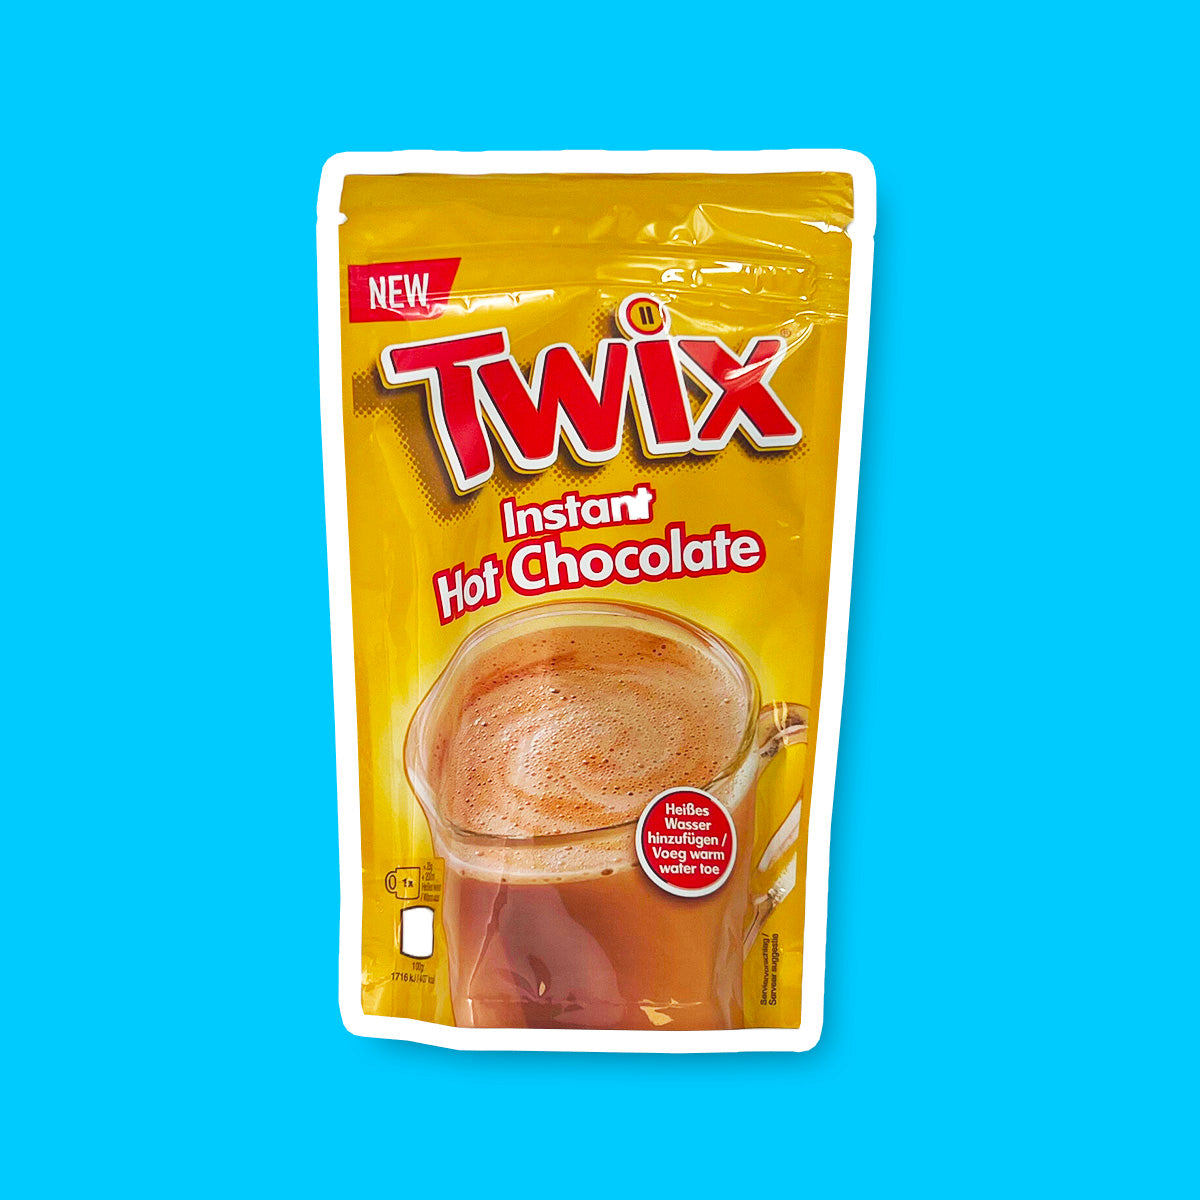 Un emballage doré sur fond bleu avec une tasse transparente de chocolat chaud avec écrit en grand « Twix » en rouge 